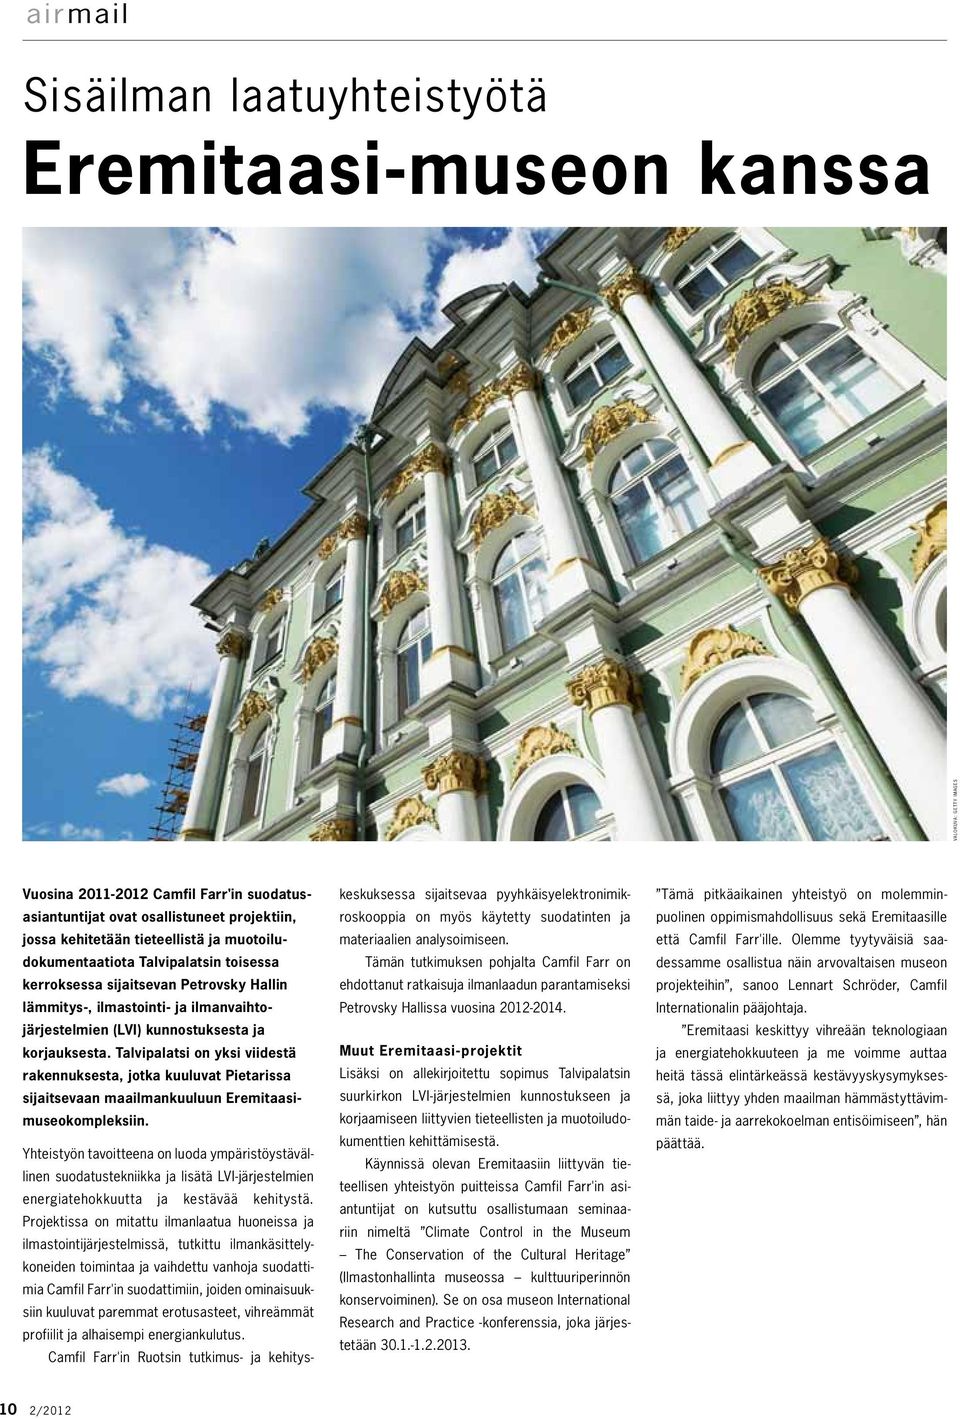 Talvipalatsi on yksi viidestä rakennuksesta, jotka kuuluvat Pietarissa sijaitsevaan maailmankuuluun Eremitaasimuseokompleksiin.